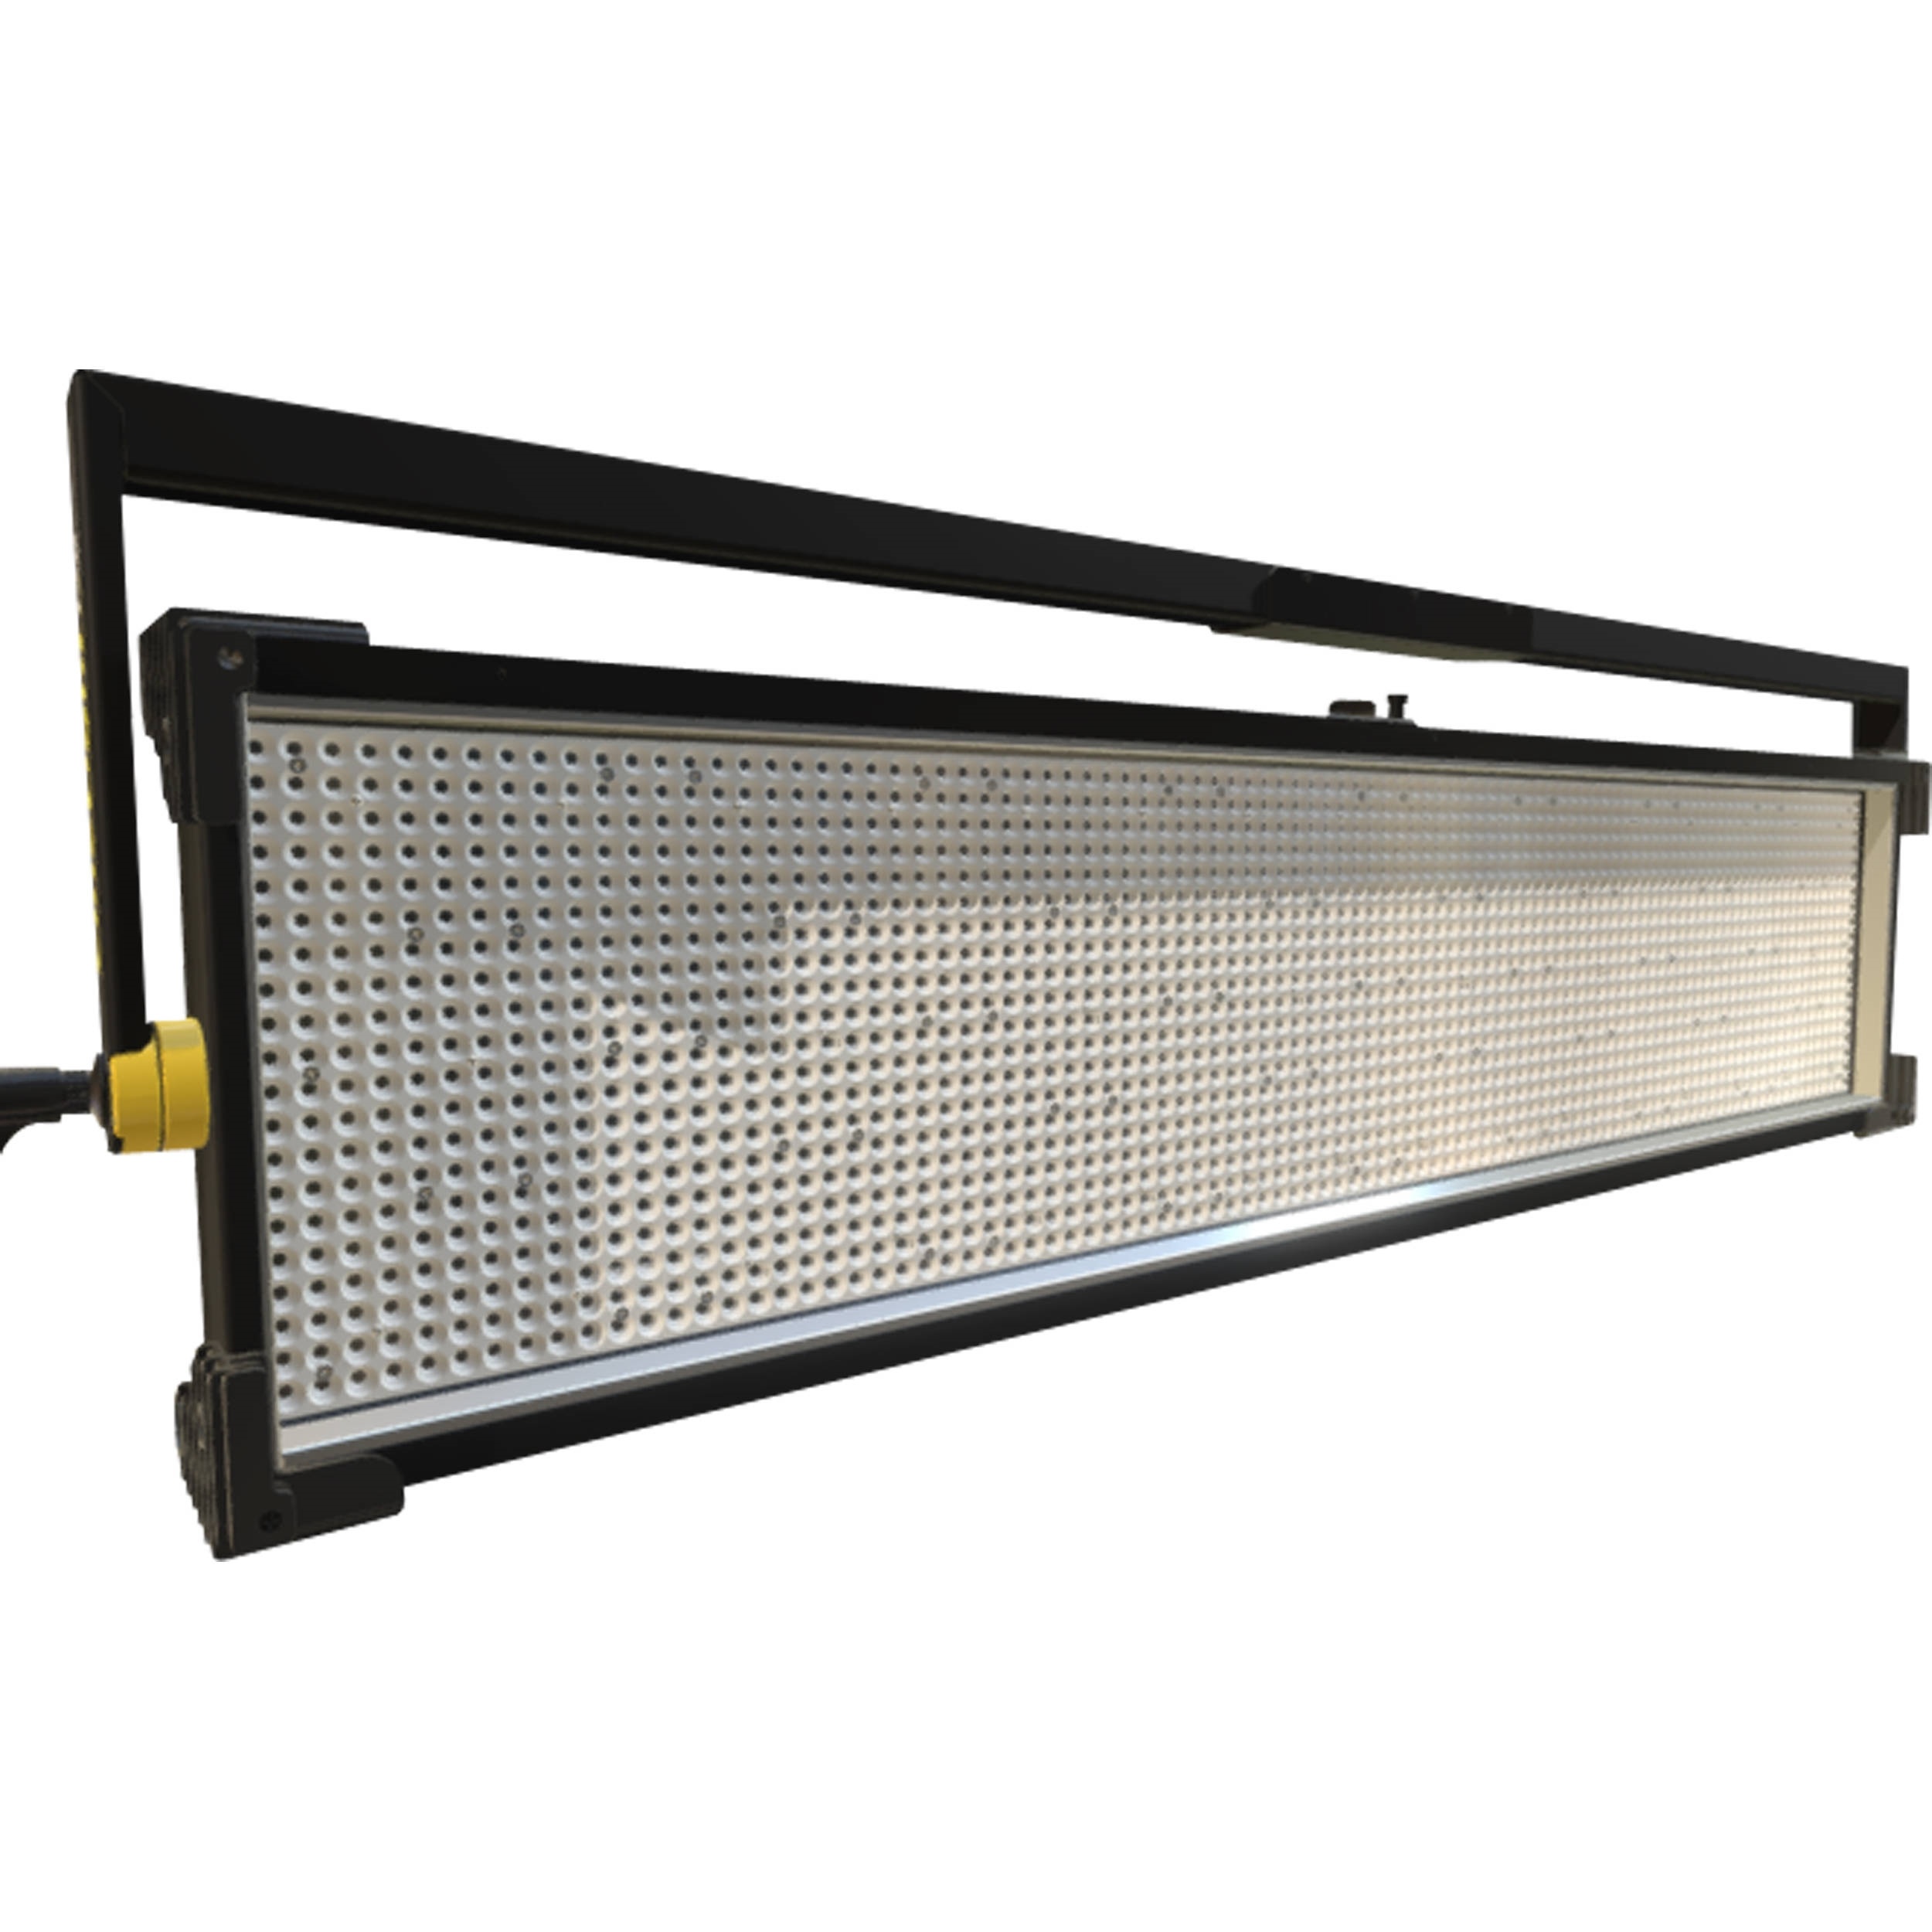 Fluotec CineLight Studio 120 1.2m Tunable Long Throw SoftLIGHT LED Panel (266W, Yoke Mount)